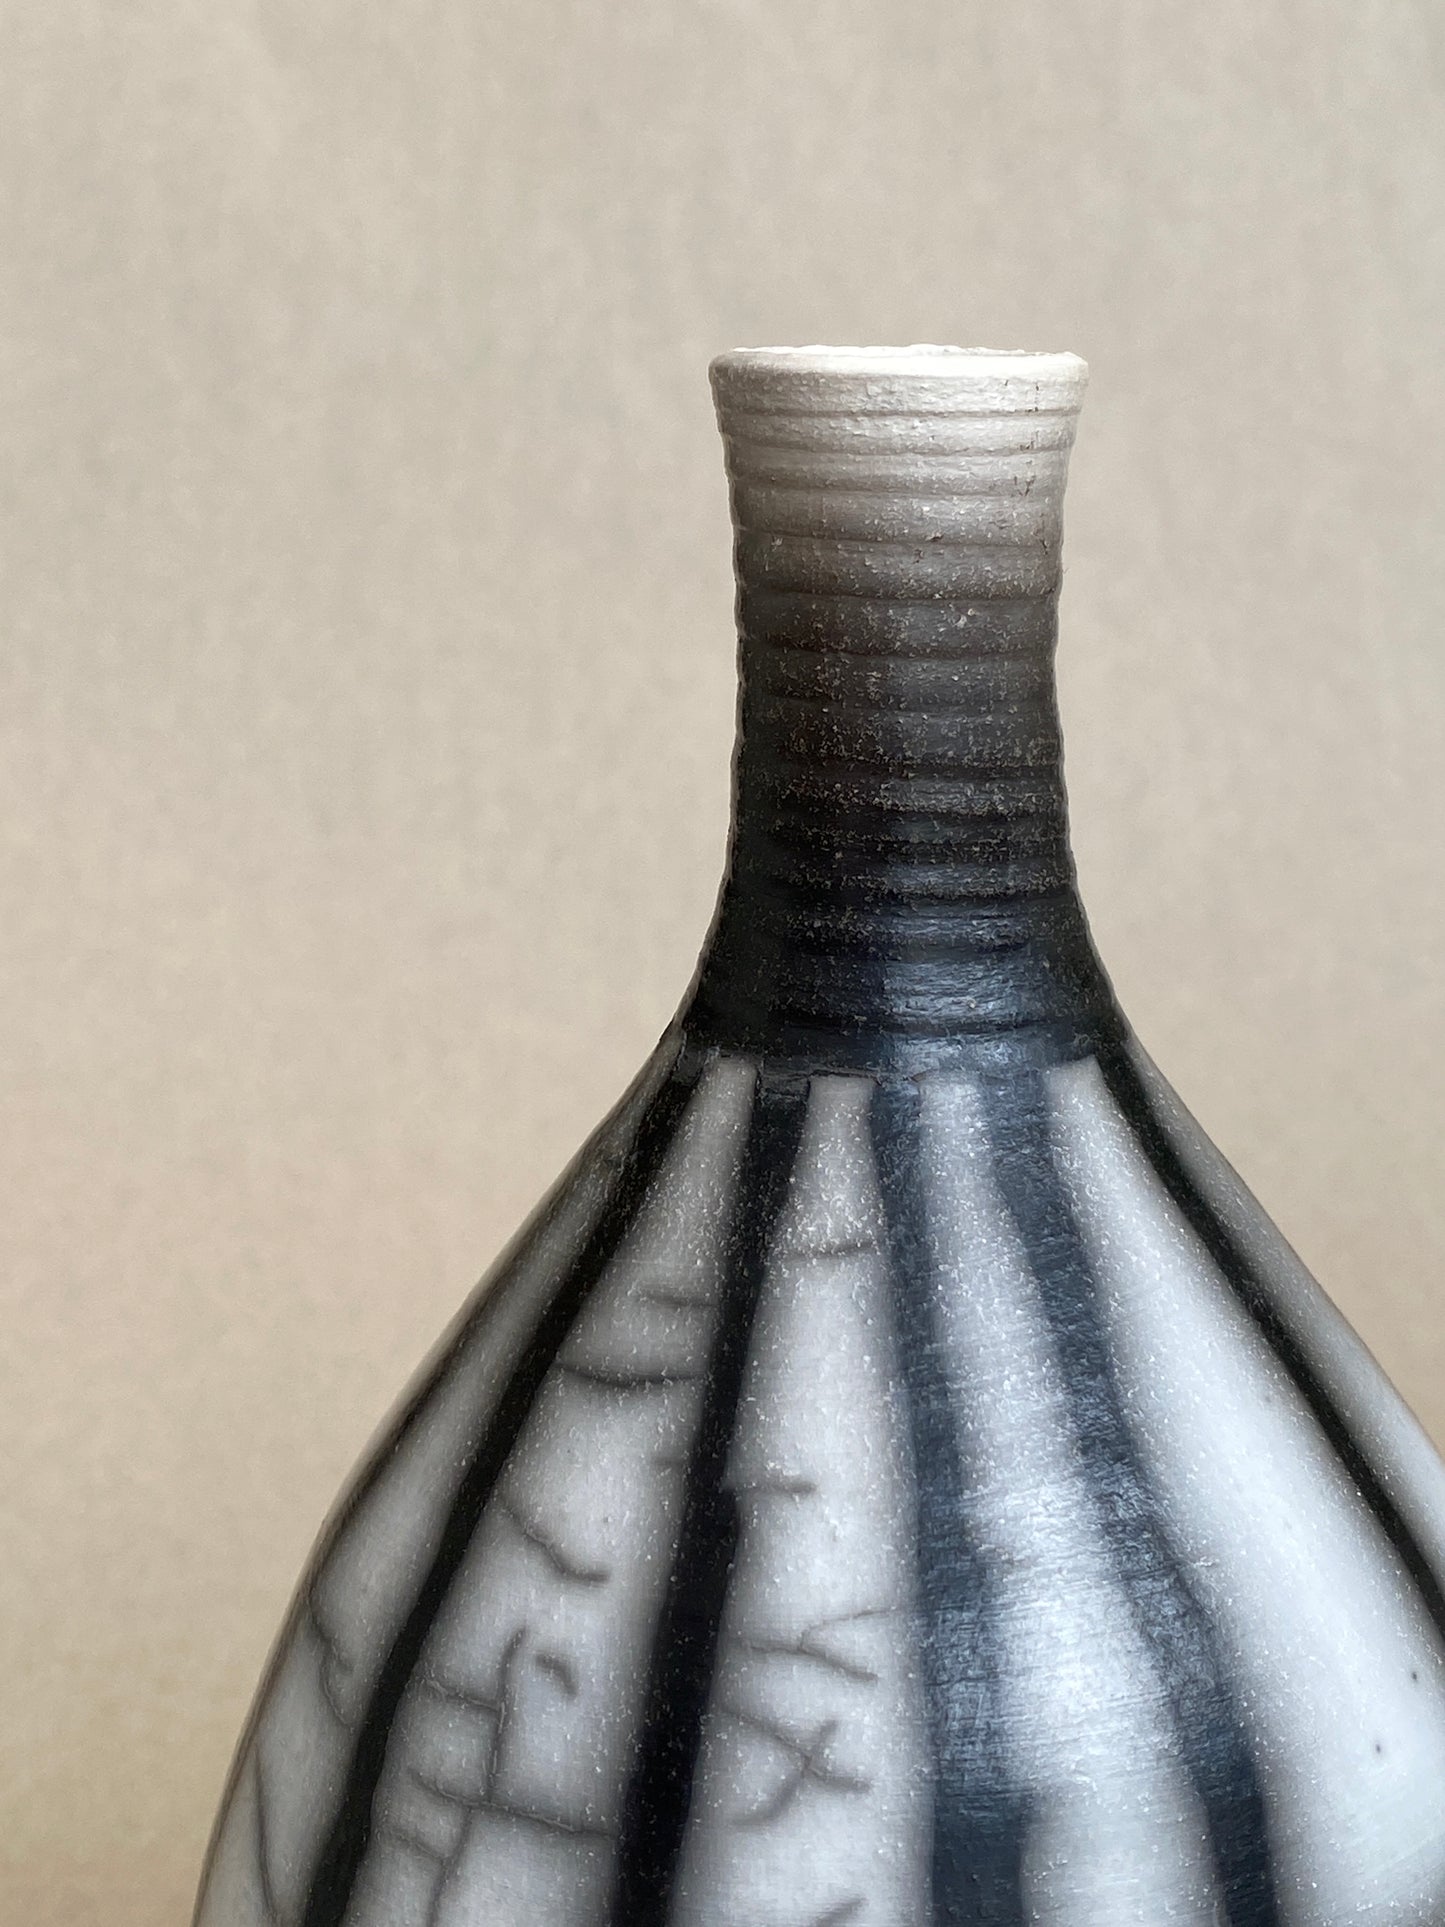 Load image into Gallery viewer, Striped Raku Fluted Vessel (medium)
